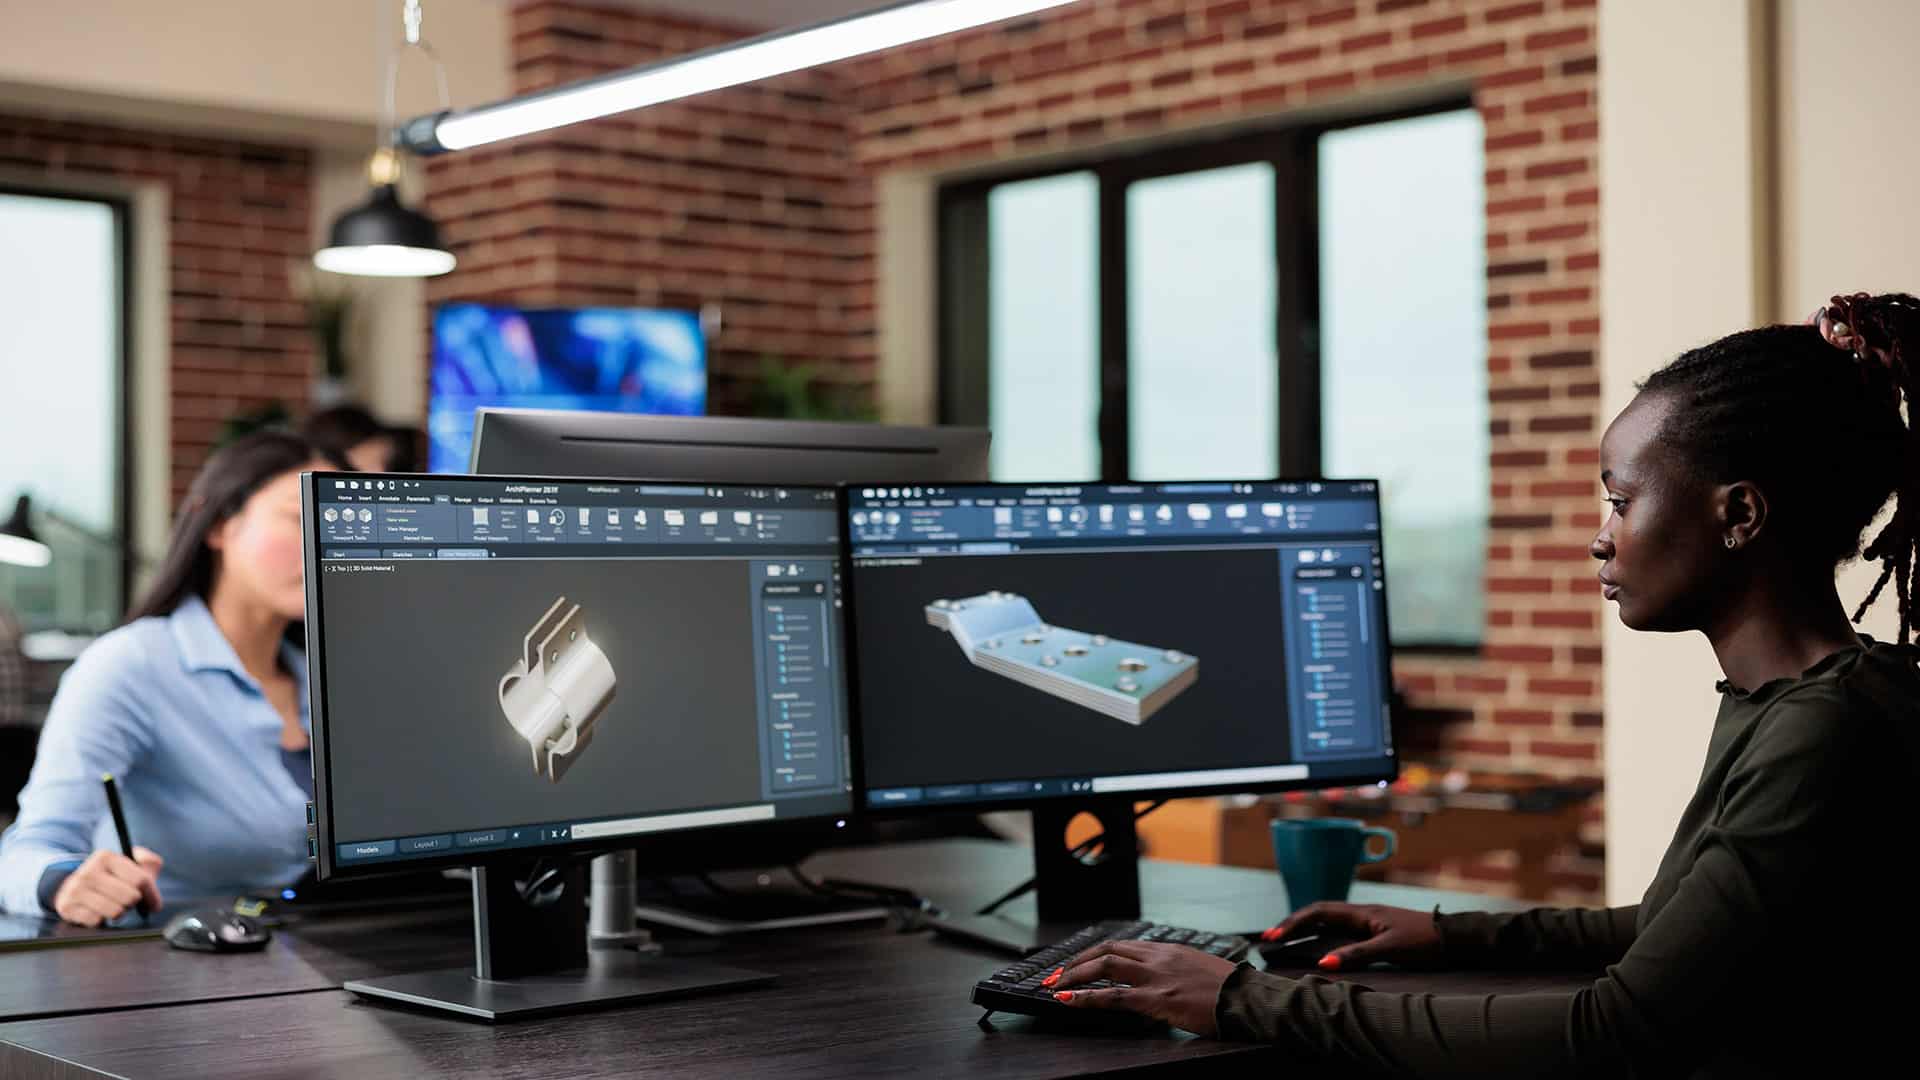 A 3D modeler working on a computer, creating a digital 3D object.